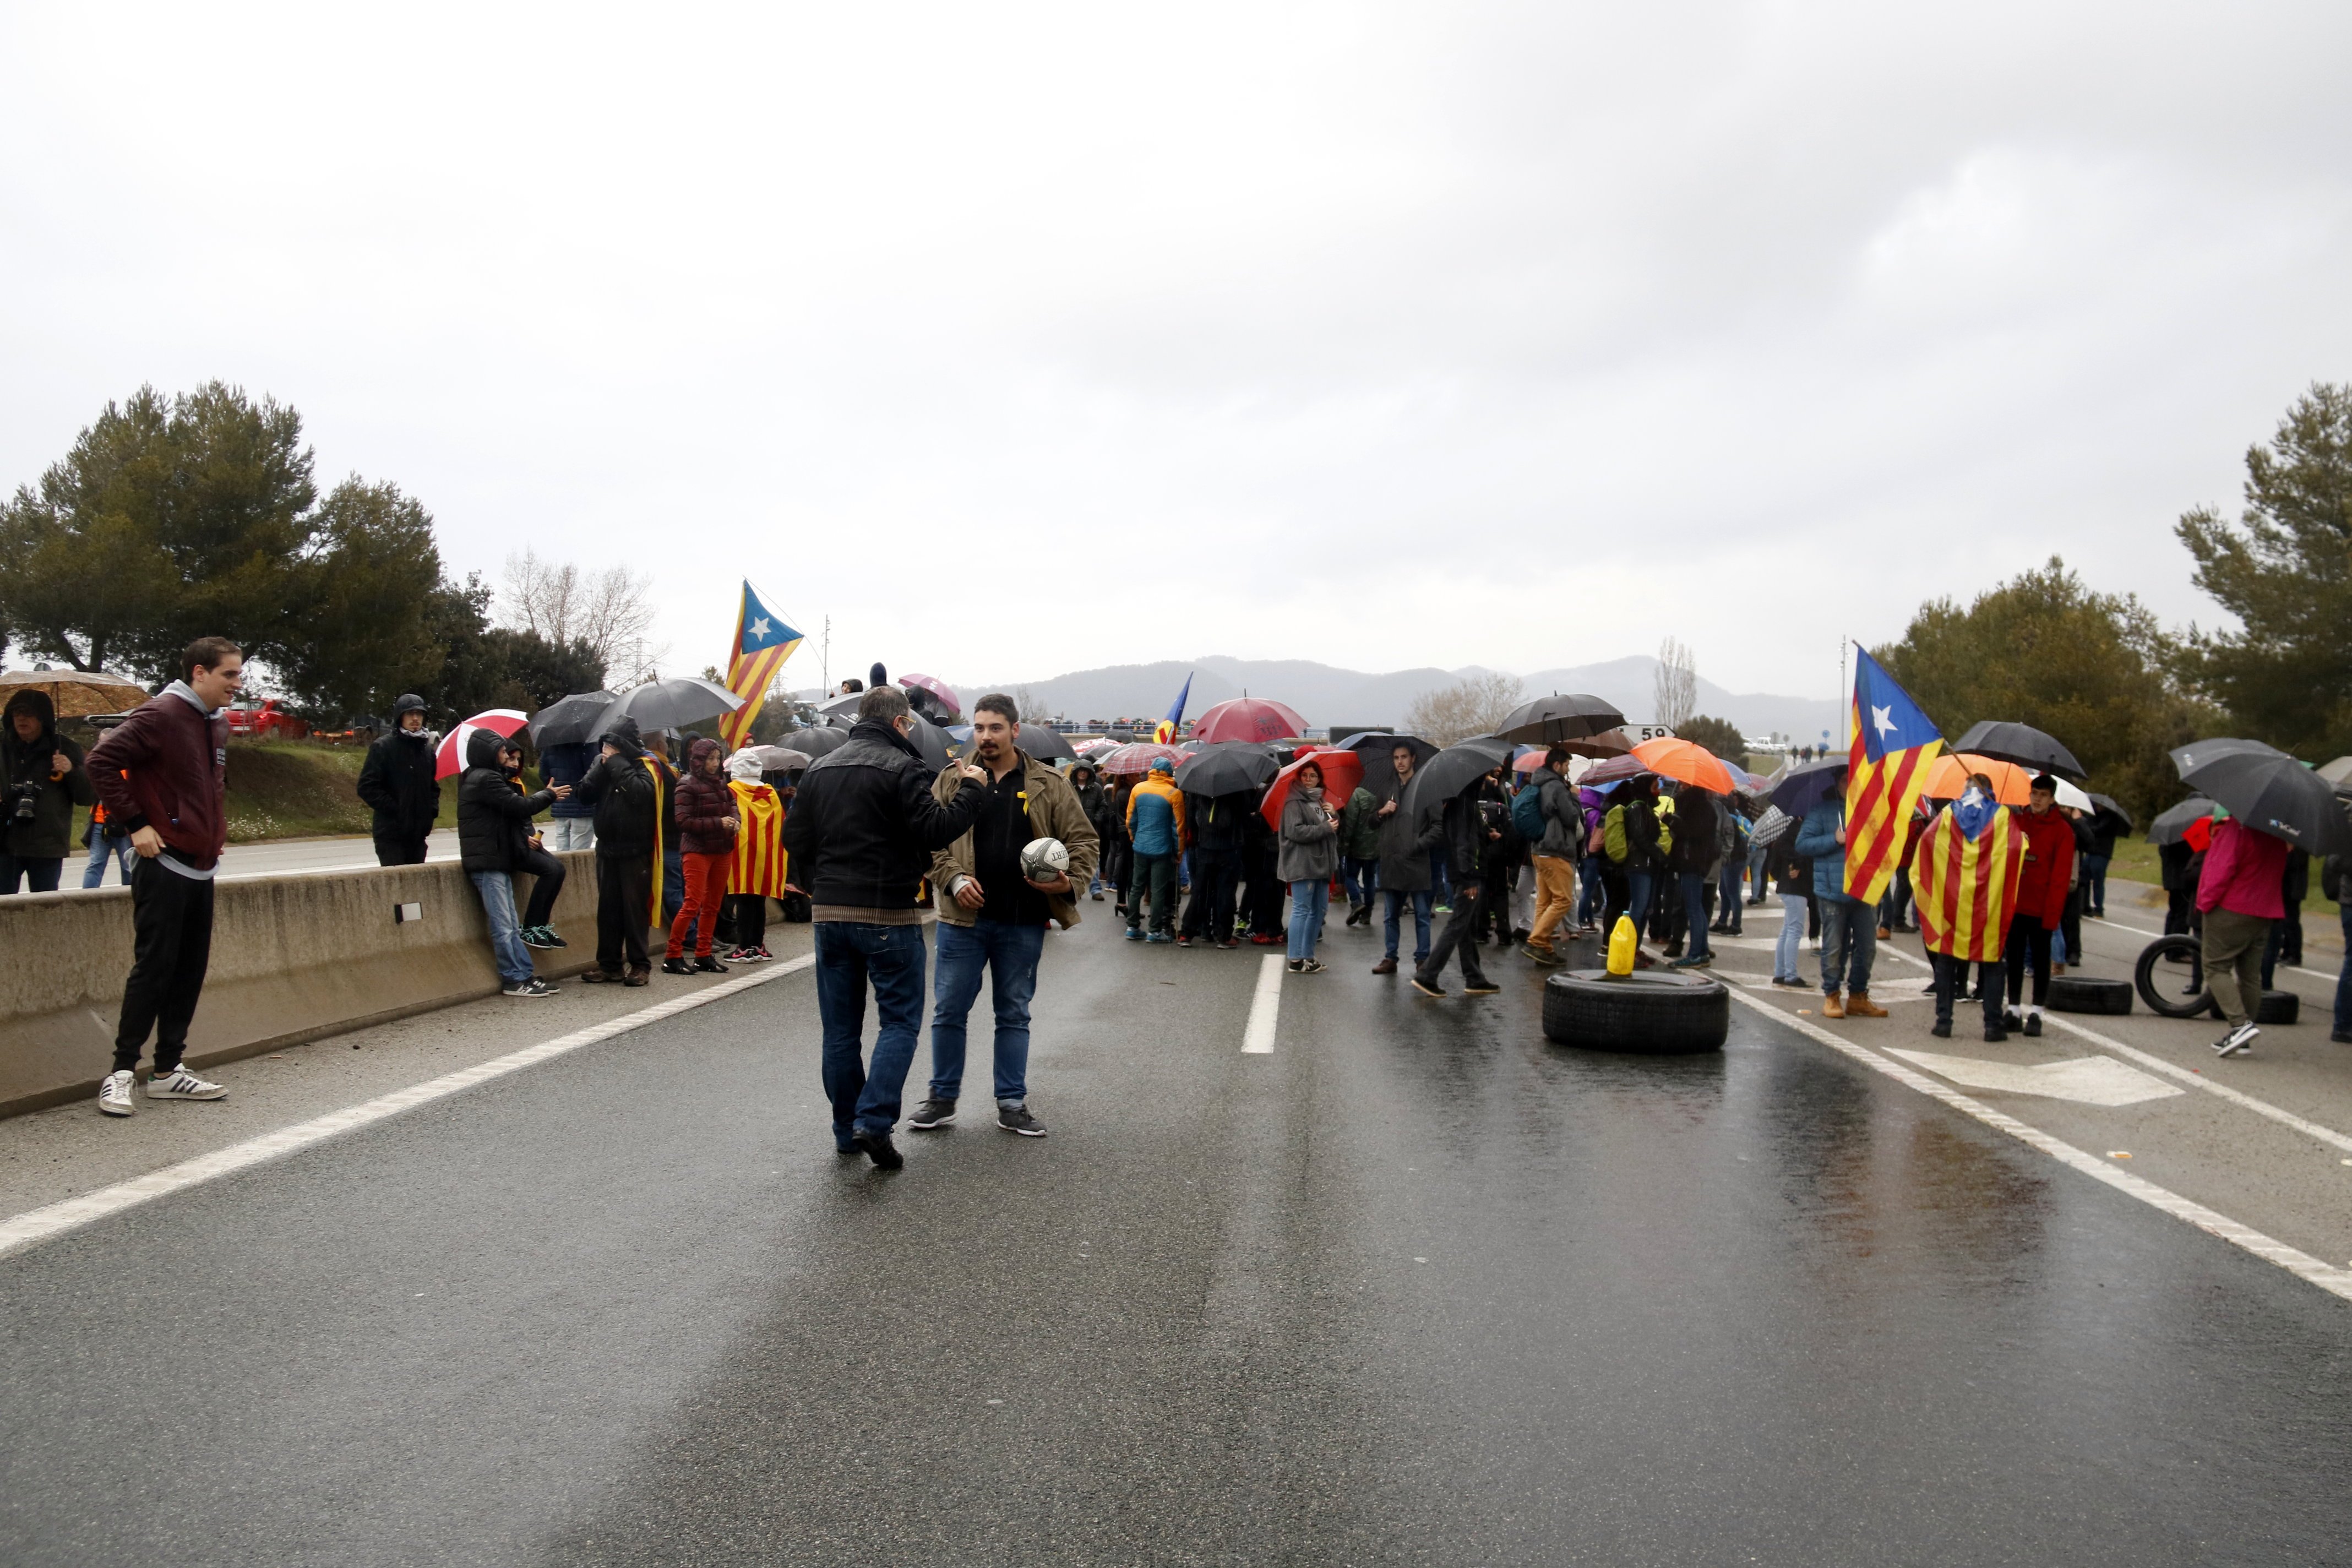 Carreteras cortadas en todo el territorio en apoyo a Puigdemont